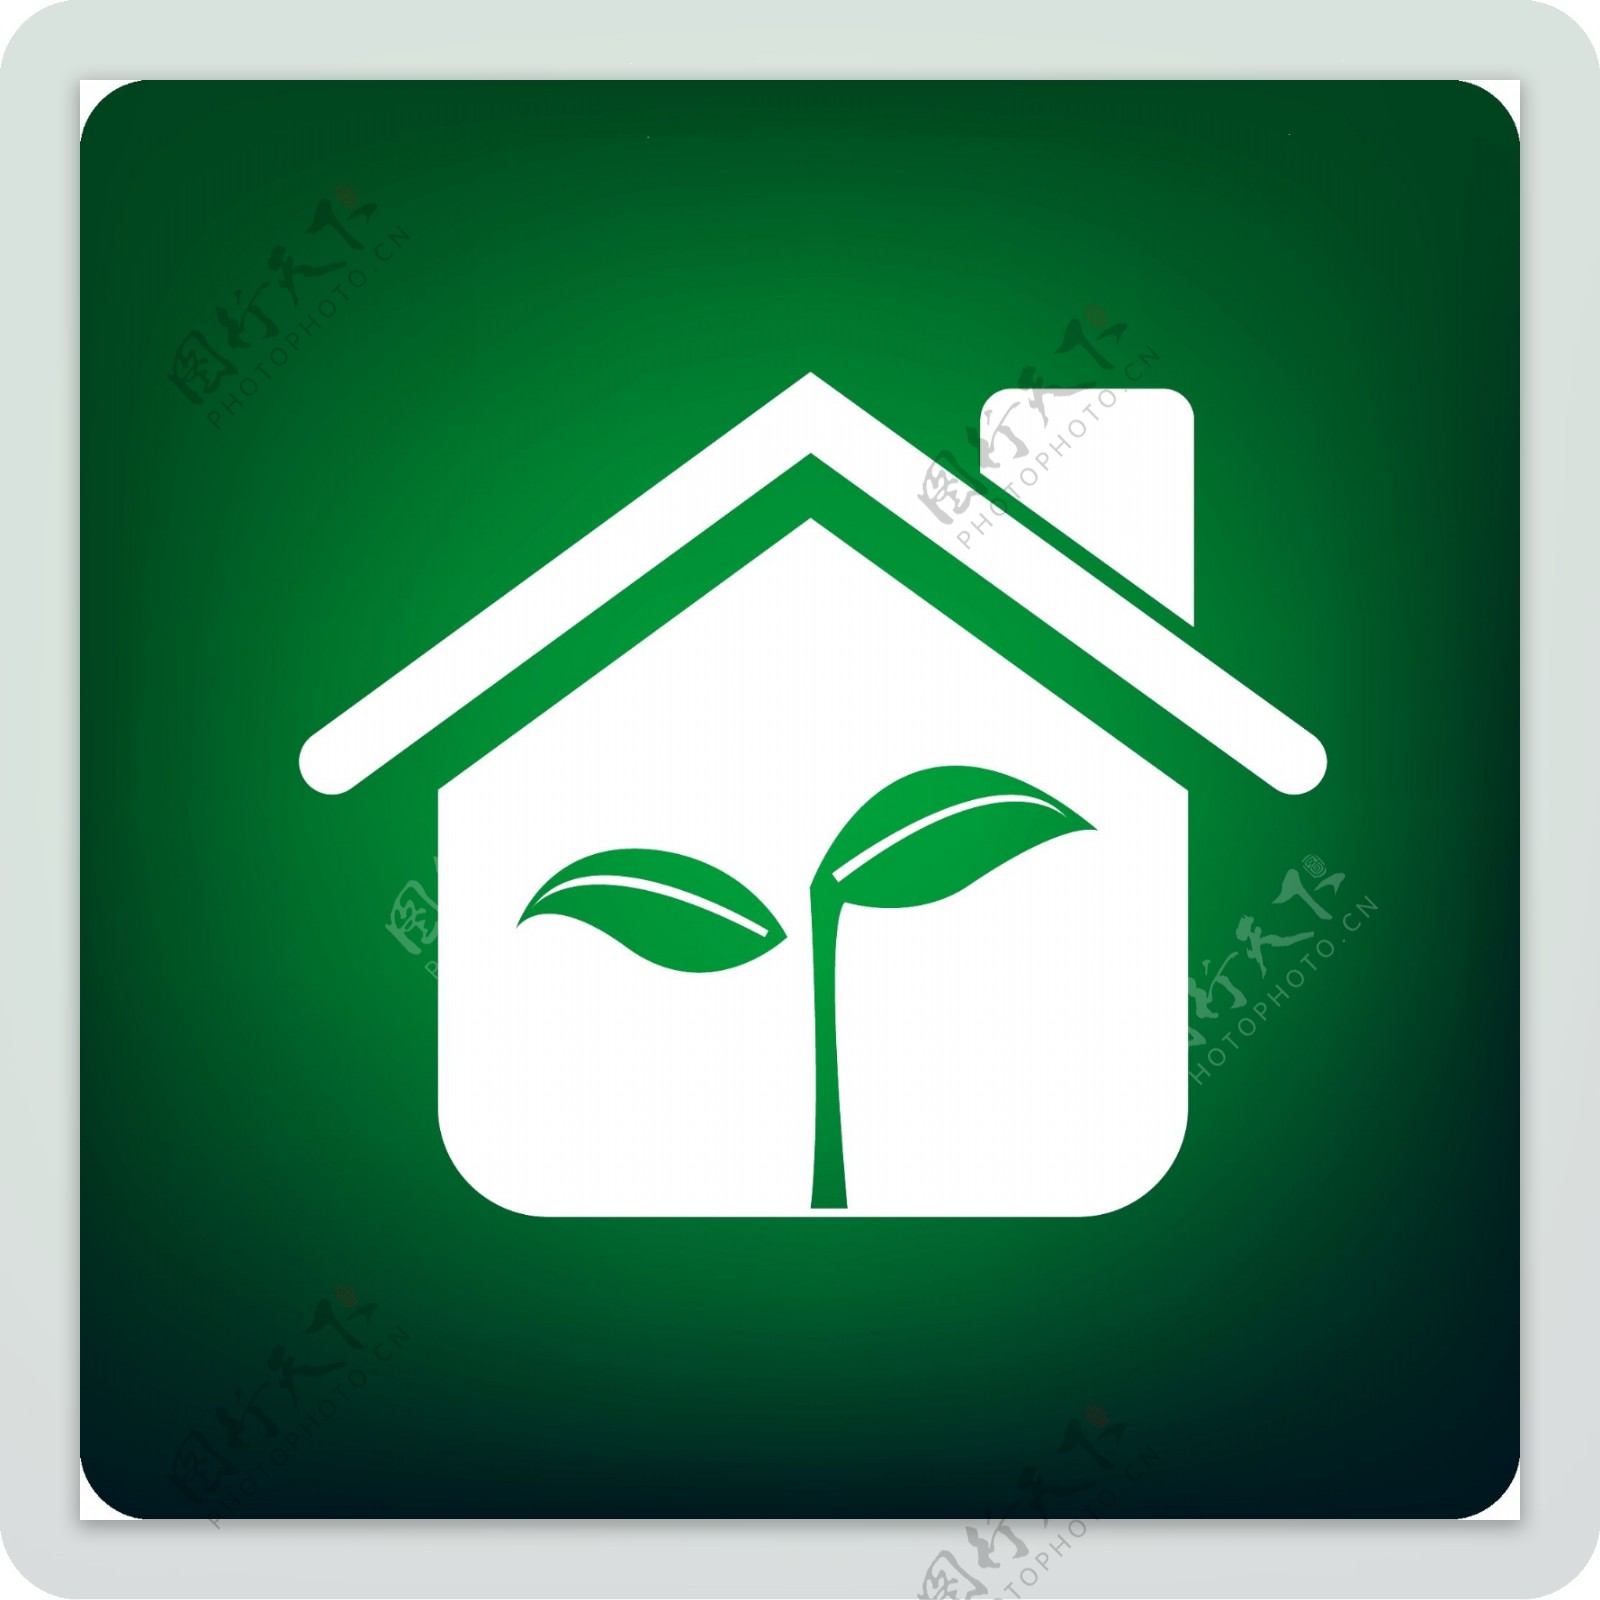 矢量绿色树叶环保主题房子素材